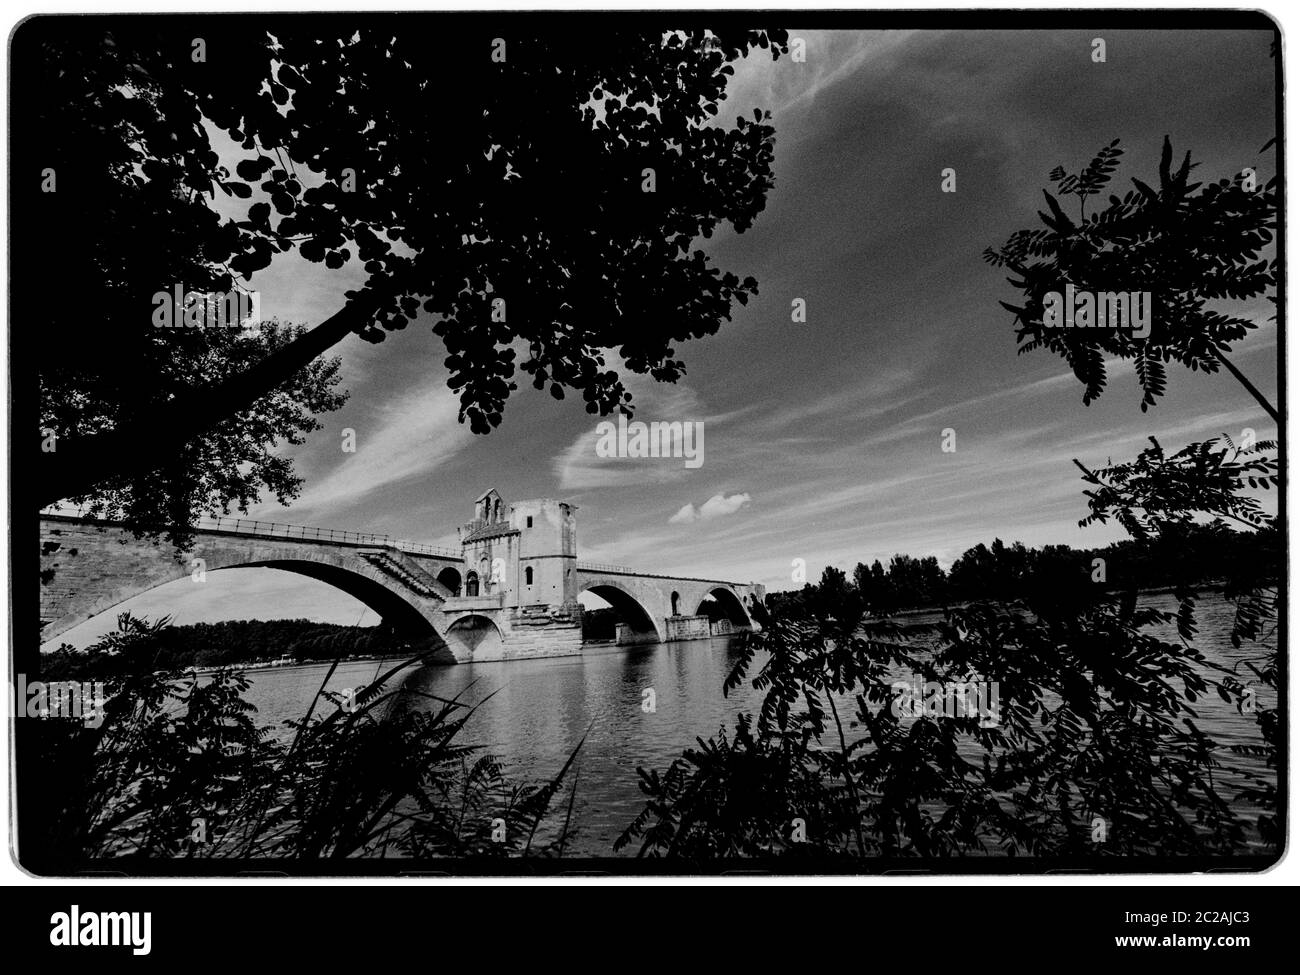 Pont d'Avignon. Le Pont Saint-Bénézet, Pont d'Avignon, 1988 Wikipeadia : le Pont Saint-Bénézet, également connu sous le nom de Pont d'Avignon, est un pont médiéval célèbre dans la ville d'Avignon, dans le sud de la France. Un pont en bois enjambant le Rhône entre Villeneuve-lès-Avignon et Avignon fut construit entre 1177 et 1185. Ce premier pont fut détruit quarante ans plus tard, en 1226, lors de la croisade albigésienne, lorsque Louis VIII de France assiéga Avignon. À partir de 1234, le pont a été reconstruit avec 22 arches en pierre. Le pont en pierre a une longueur d'environ 900 m (980 yd) et une largeur de seulement 4.9 m (16 ft) Banque D'Images